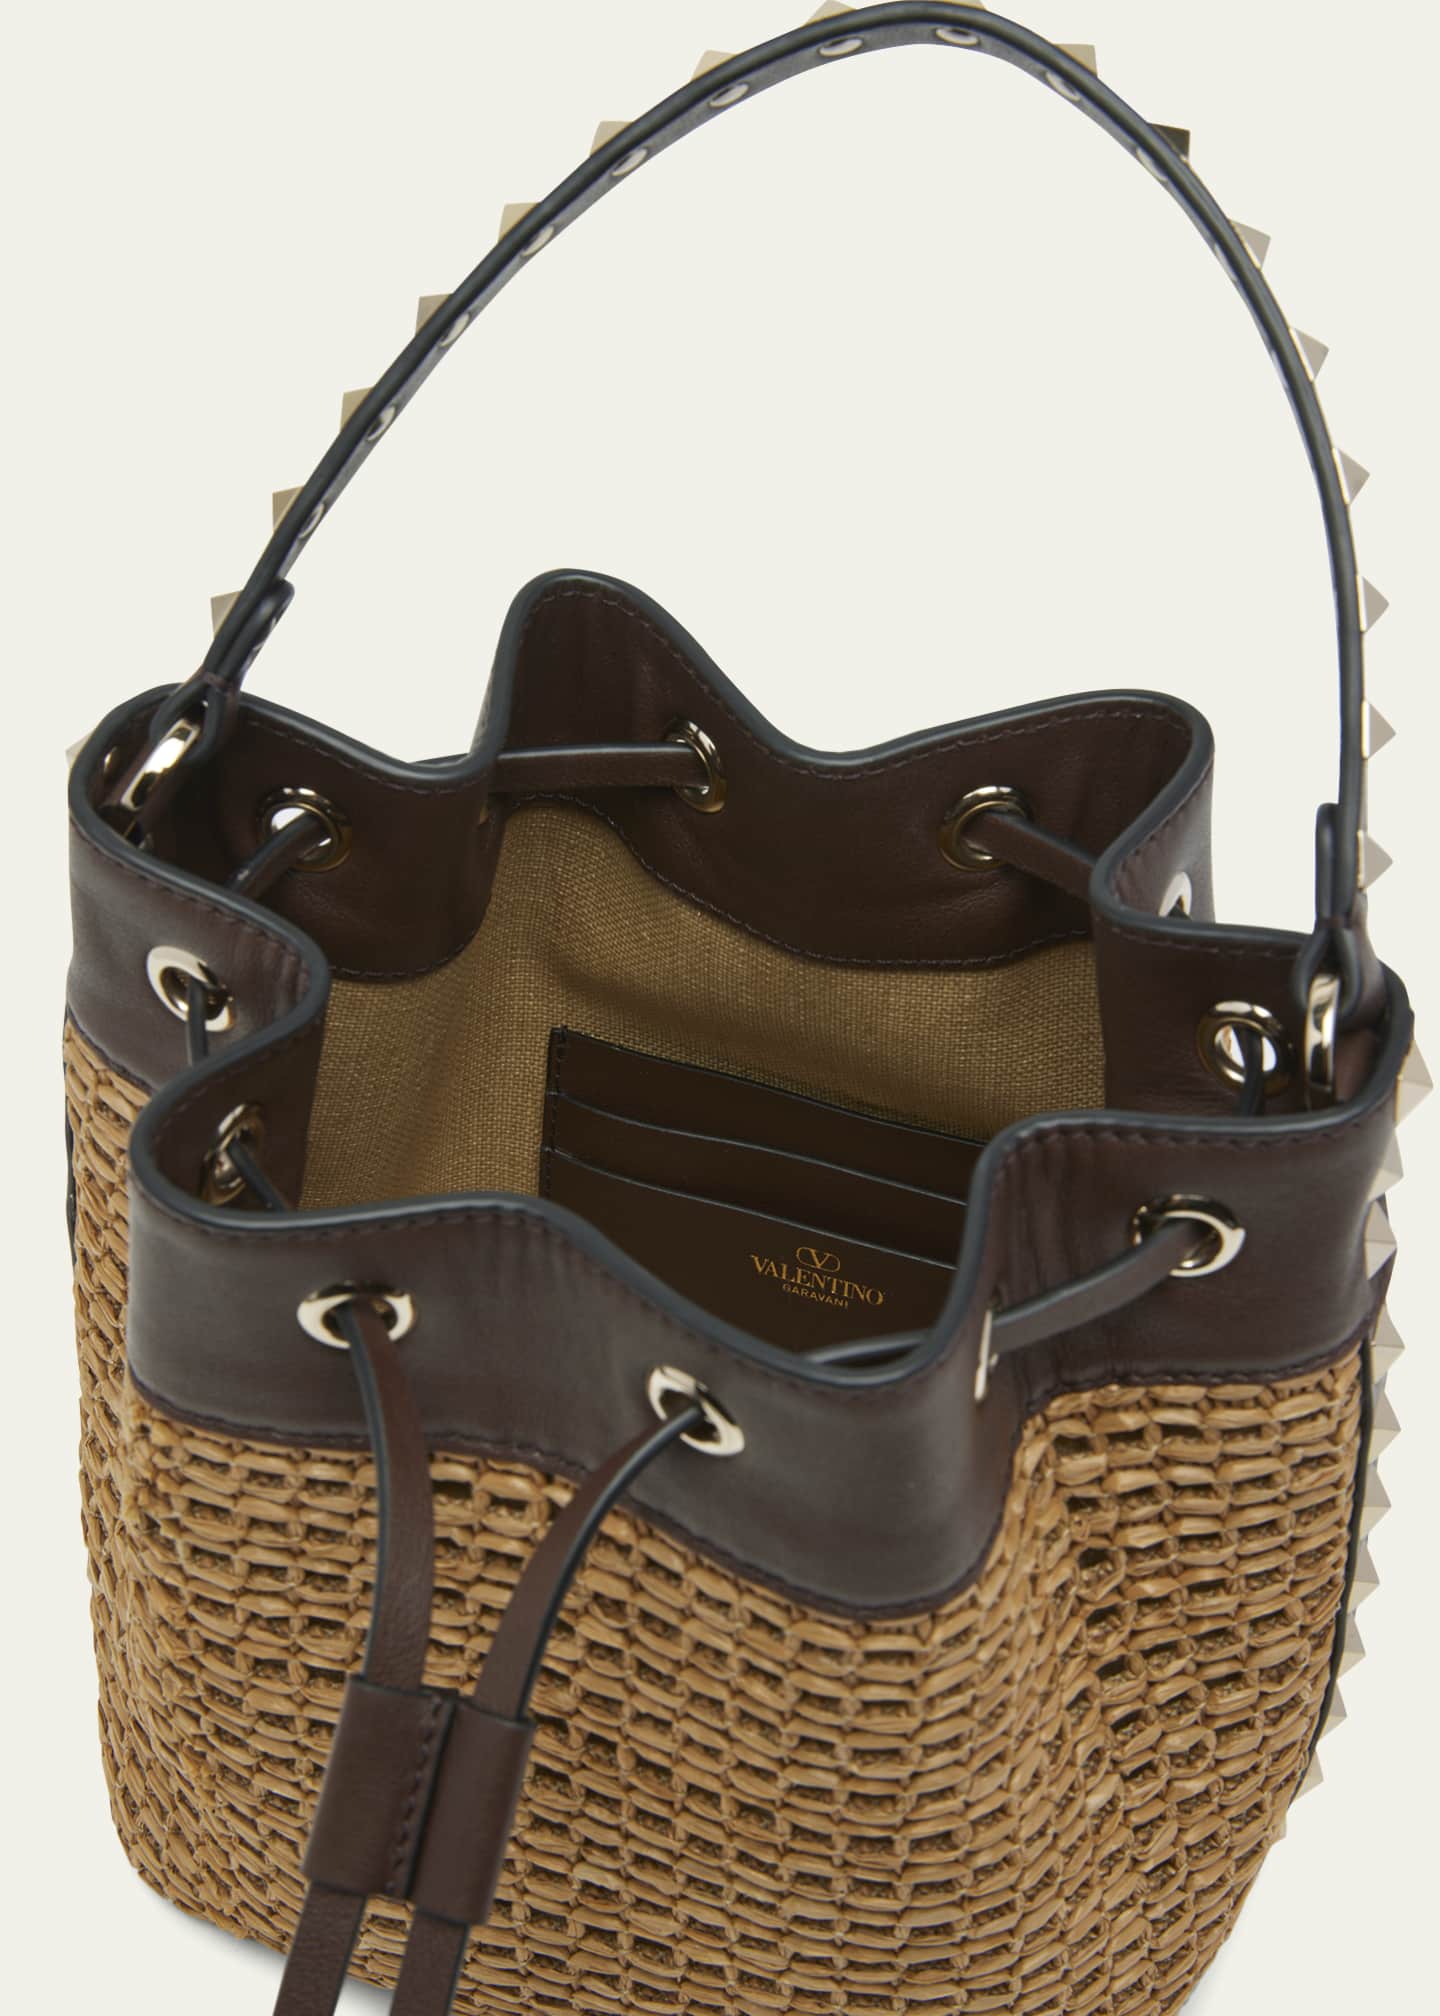 VALENTINO GARAVANI - Rockstud Leather Bucket Bag